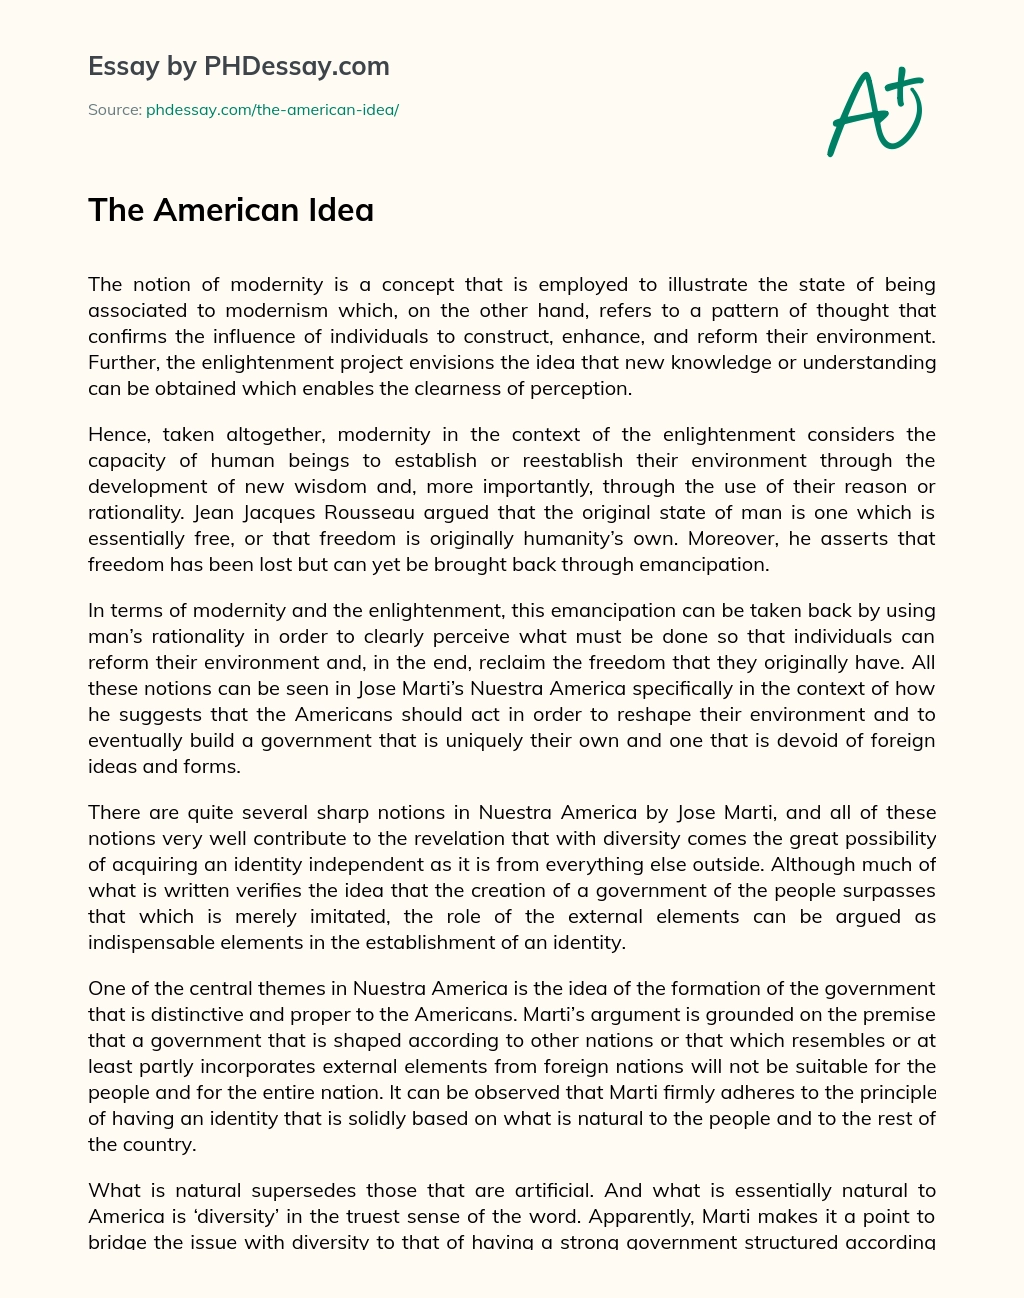 The American Idea essay